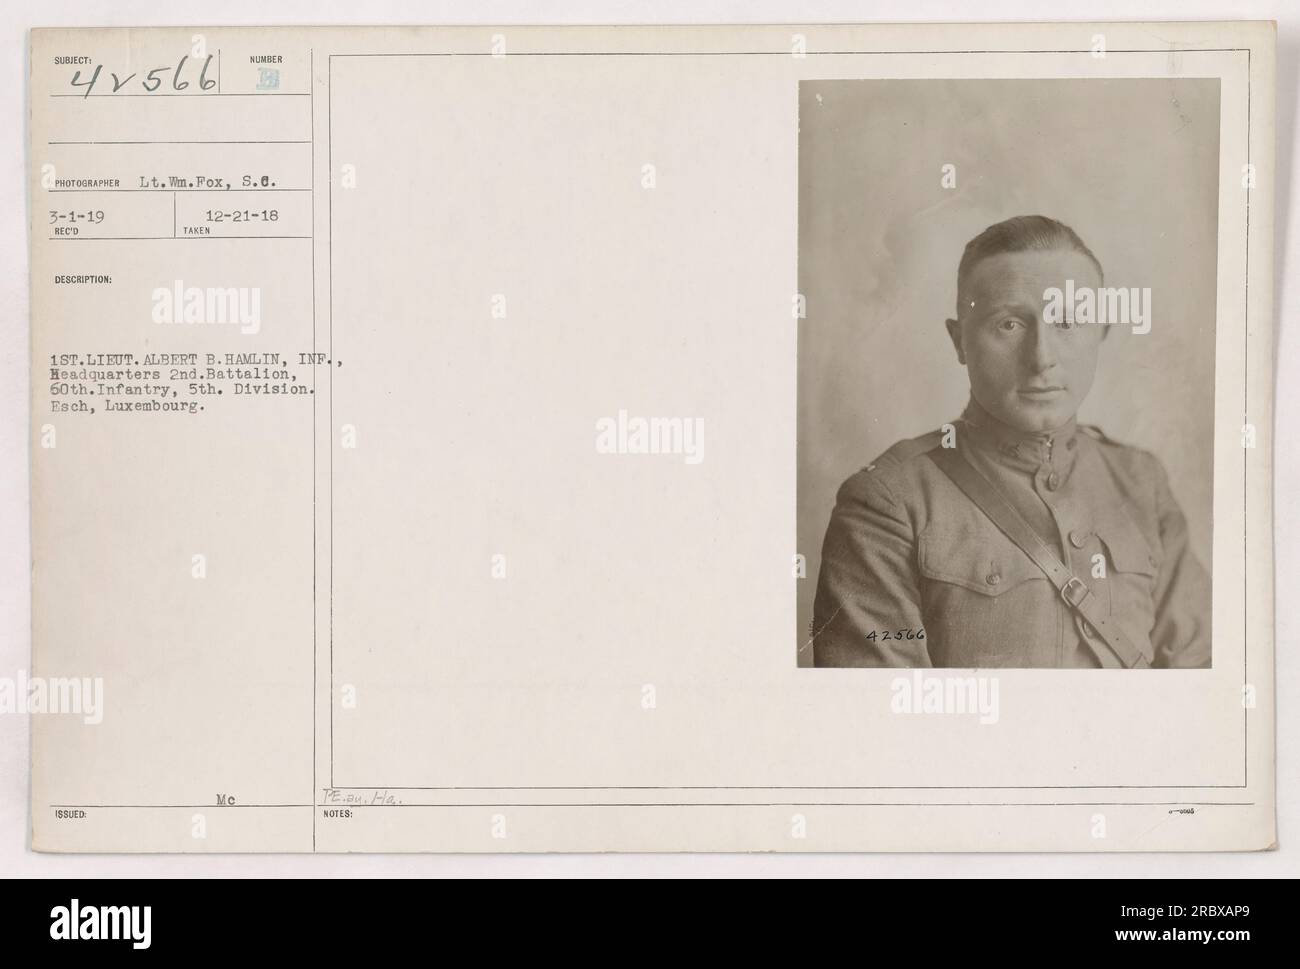 Il primo tenente Albert B. Hamlin della 60th Infantry, 5th Division, è raffigurato a Esch, Lussemburgo, in questa fotografia scattata dal tenente WN. Fox il 3 gennaio 1919. La fotografia è numerata 41566 ed è stata pubblicata il 21 dicembre 1918. Foto Stock